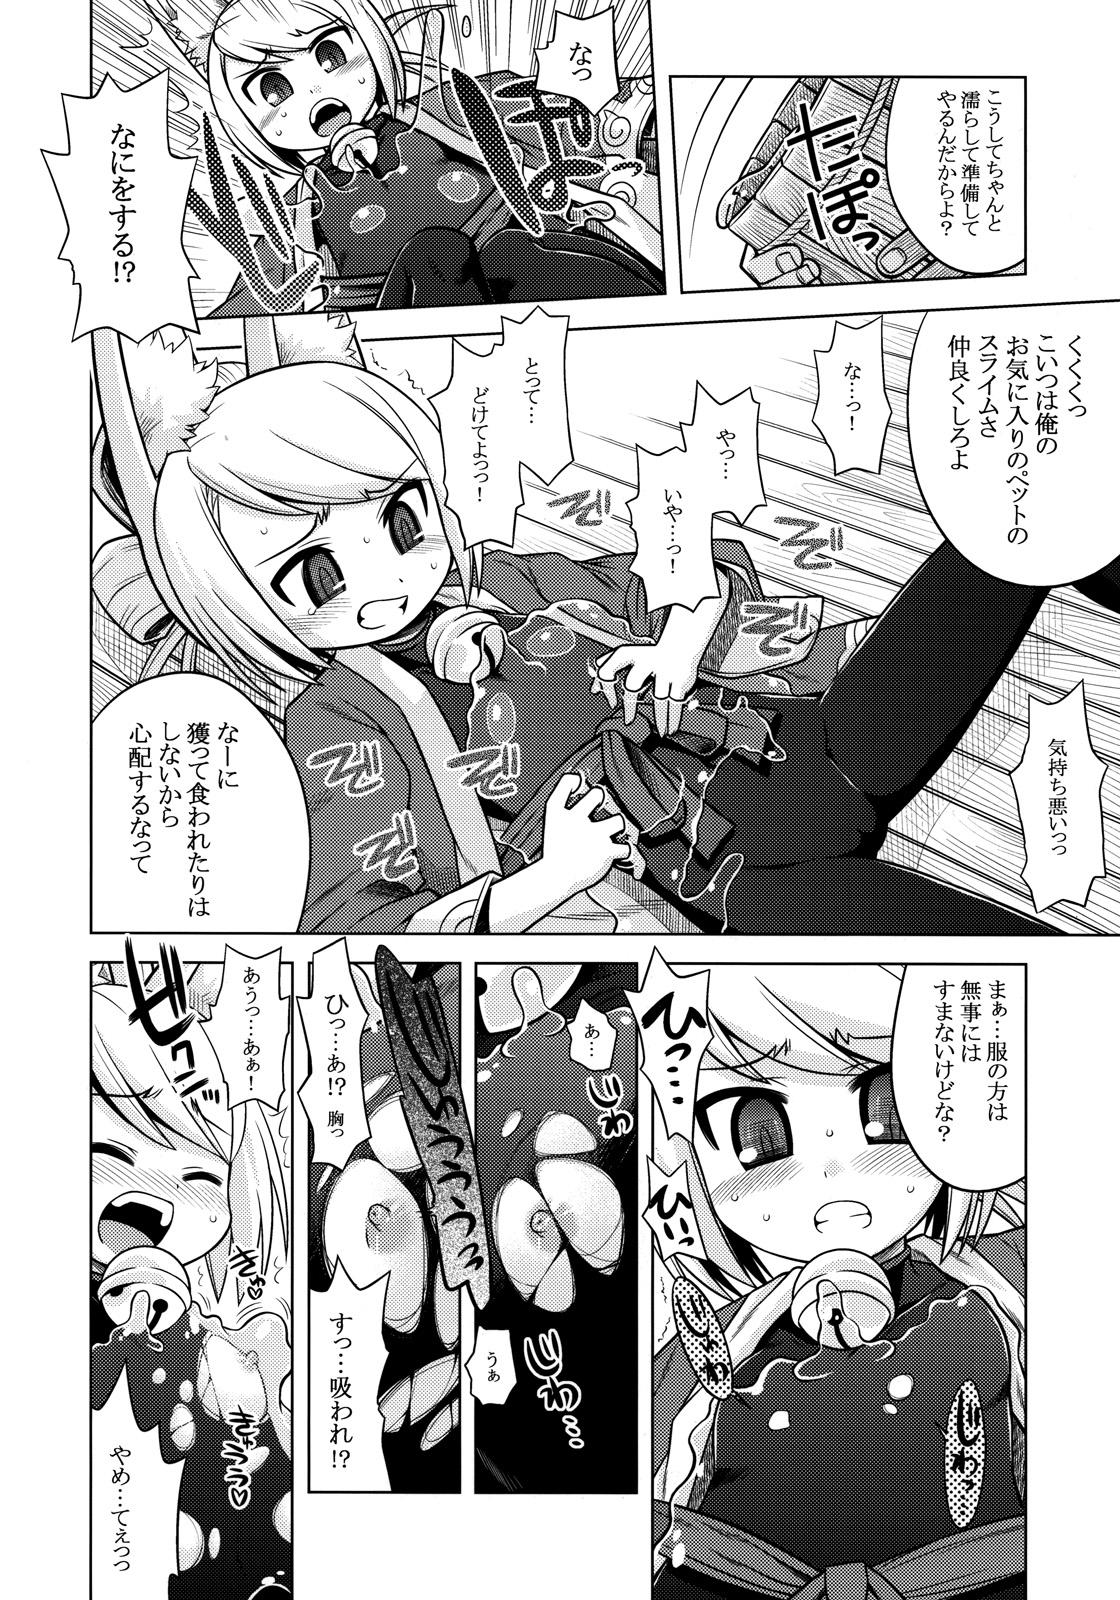 Kashima Nanadora no Anone 2 - 7th dragon HD - Page 6